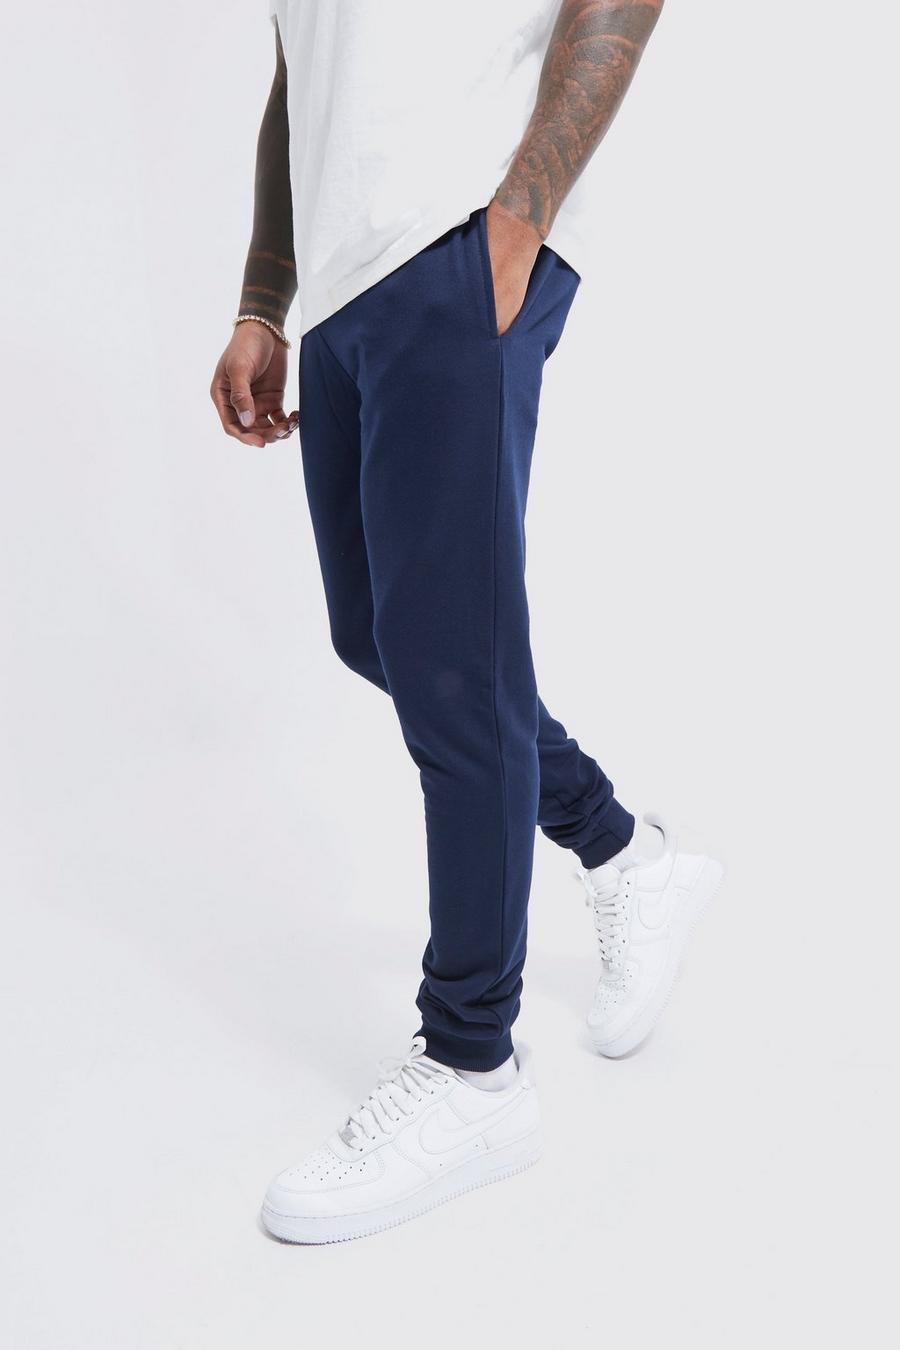 Pantalón deportivo básico súper pitillo, Navy azul marino